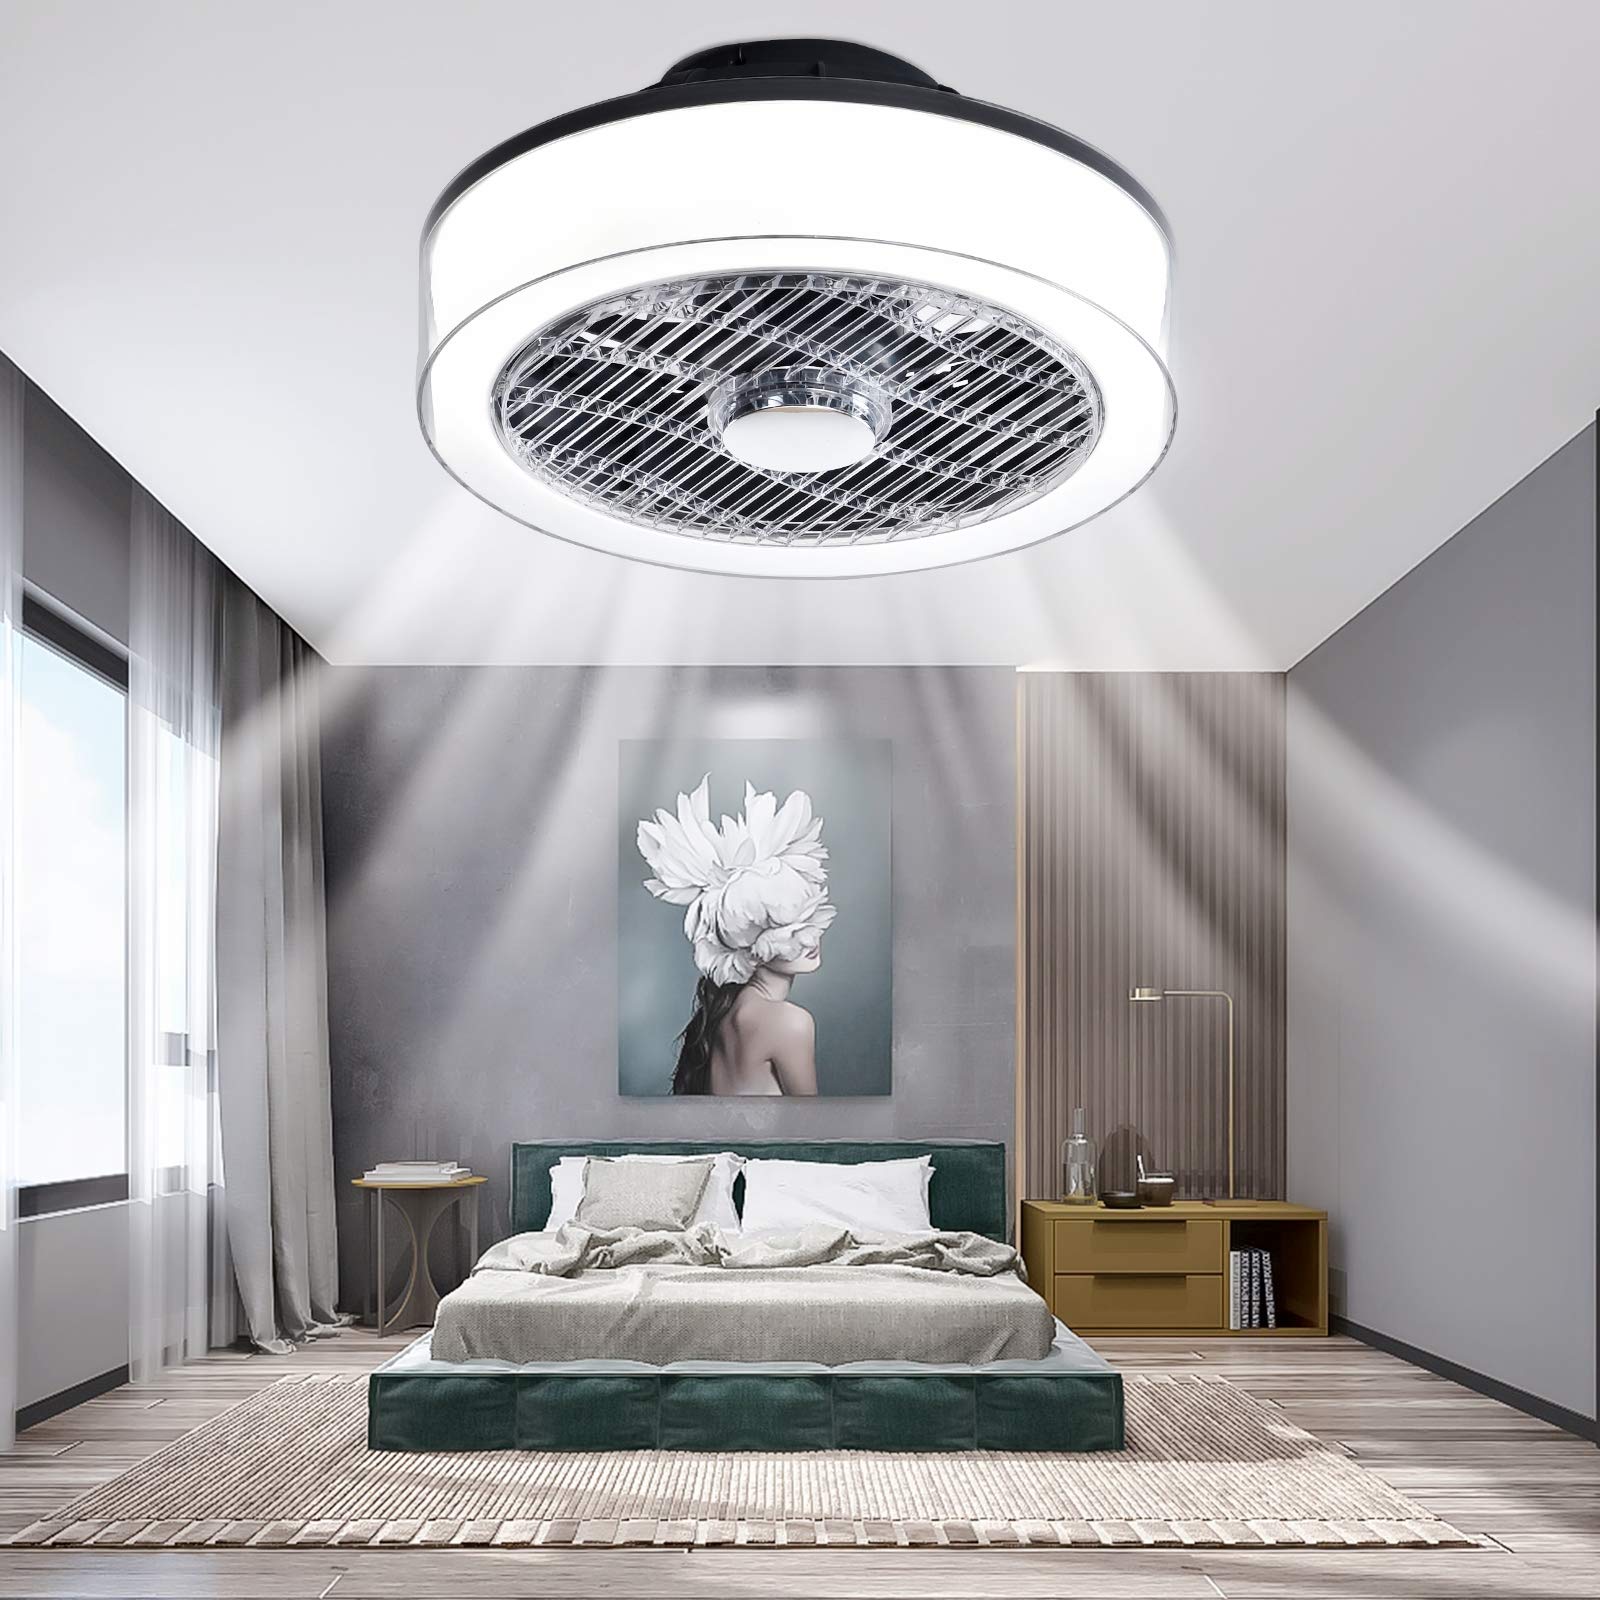 IYUNXI Modern ceiling Fan with Lights Remote control 15 Inch Flush Mount ceiling Fan Dimmable 3-Speed Low Profile ceiling Fan Li